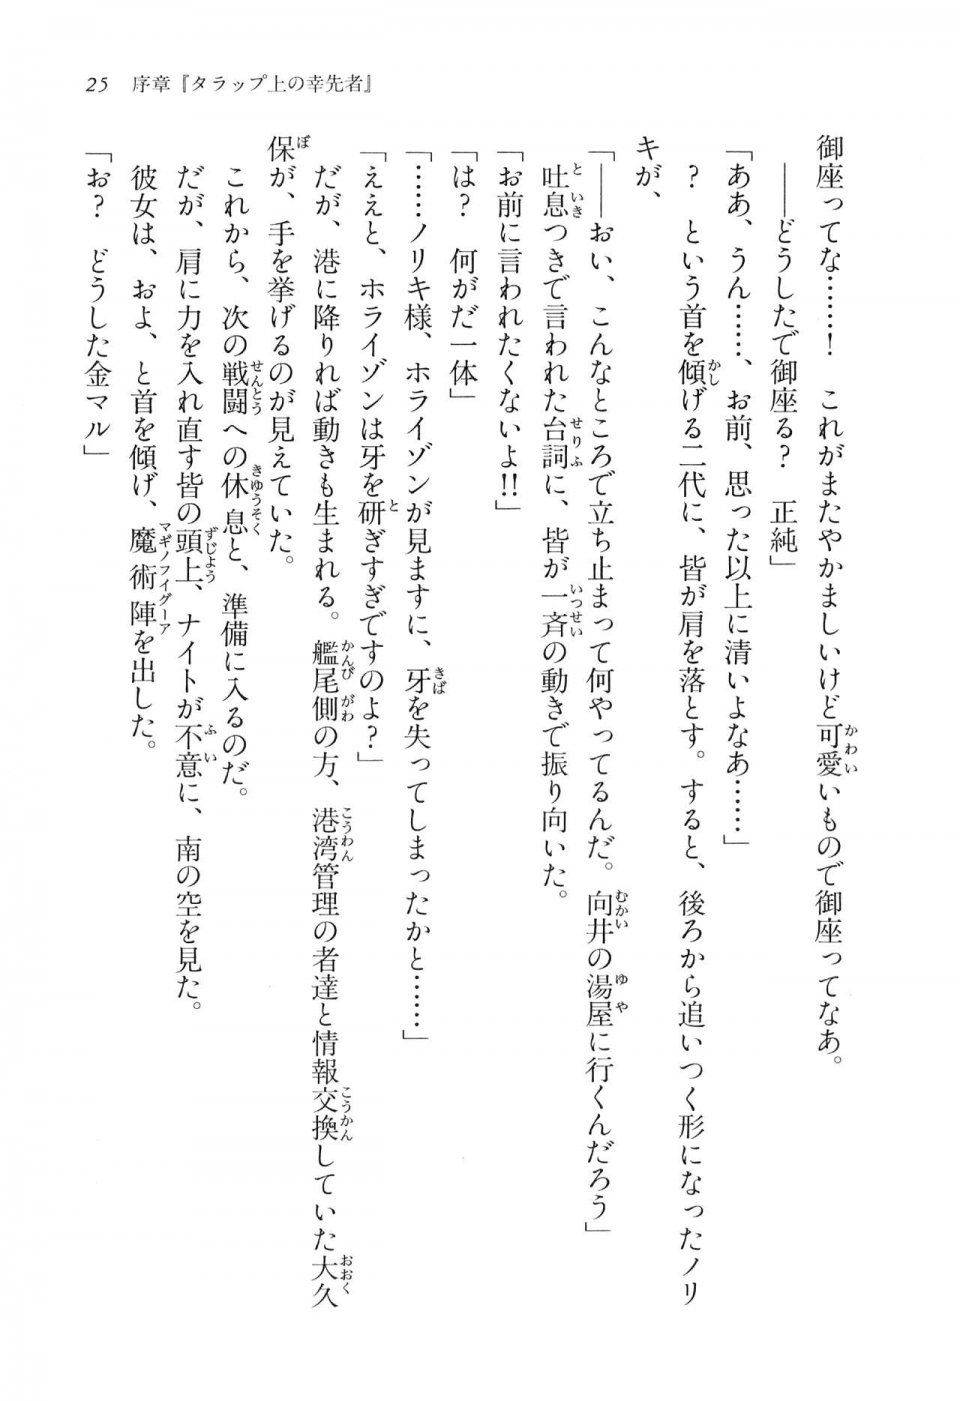 Kyoukai Senjou no Horizon LN Vol 16(7A) - Photo #25